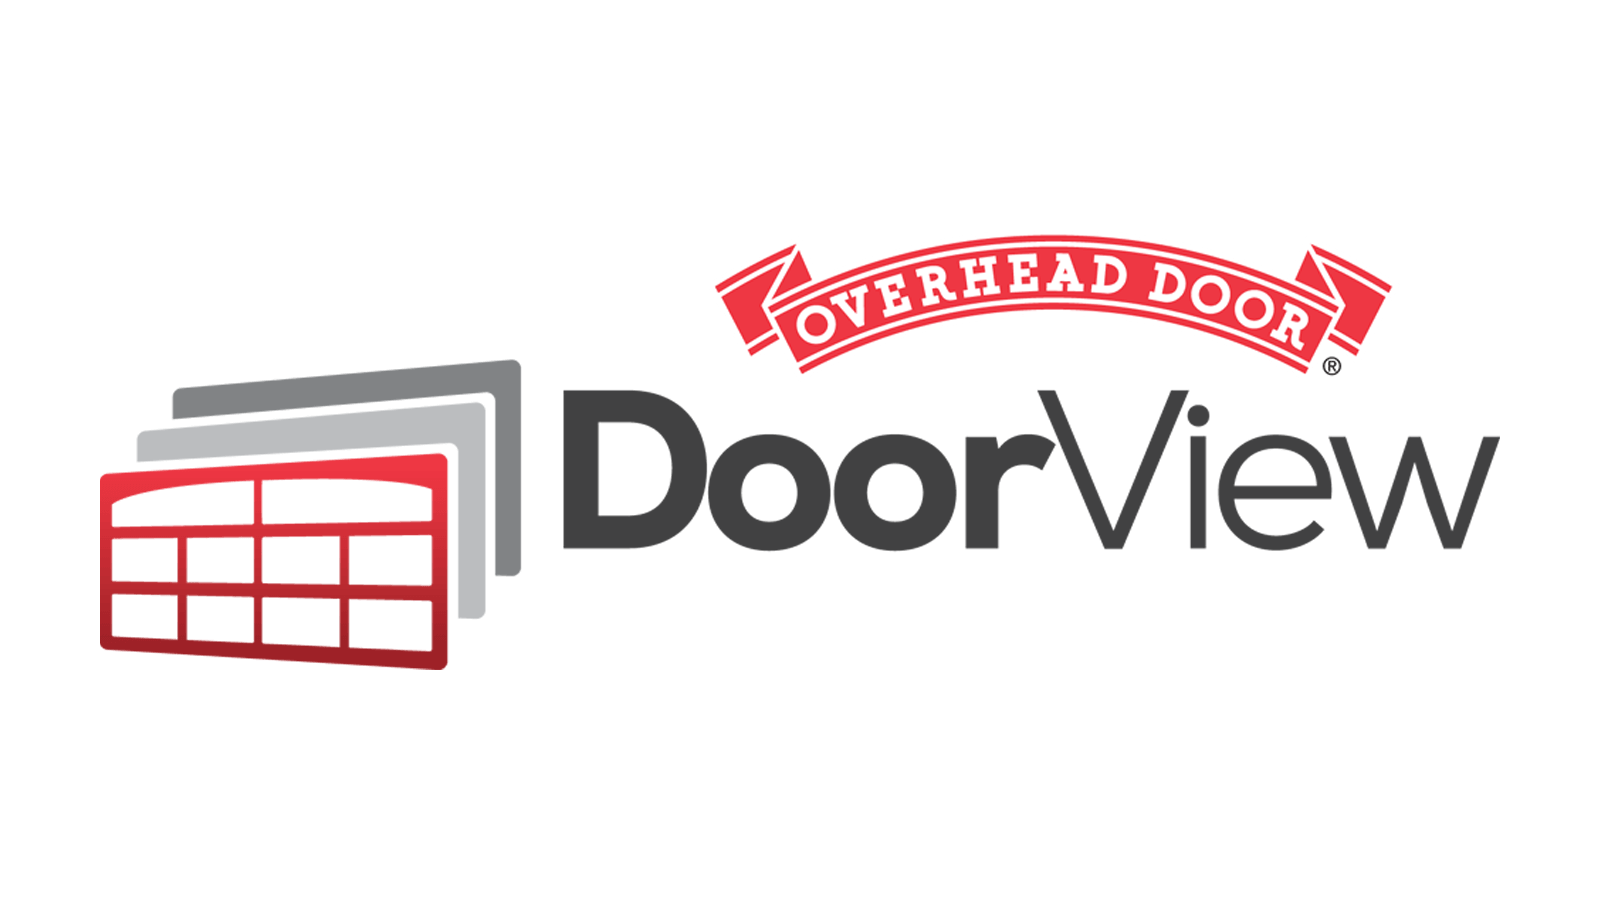 Overhead Door Company™ DoorView logo